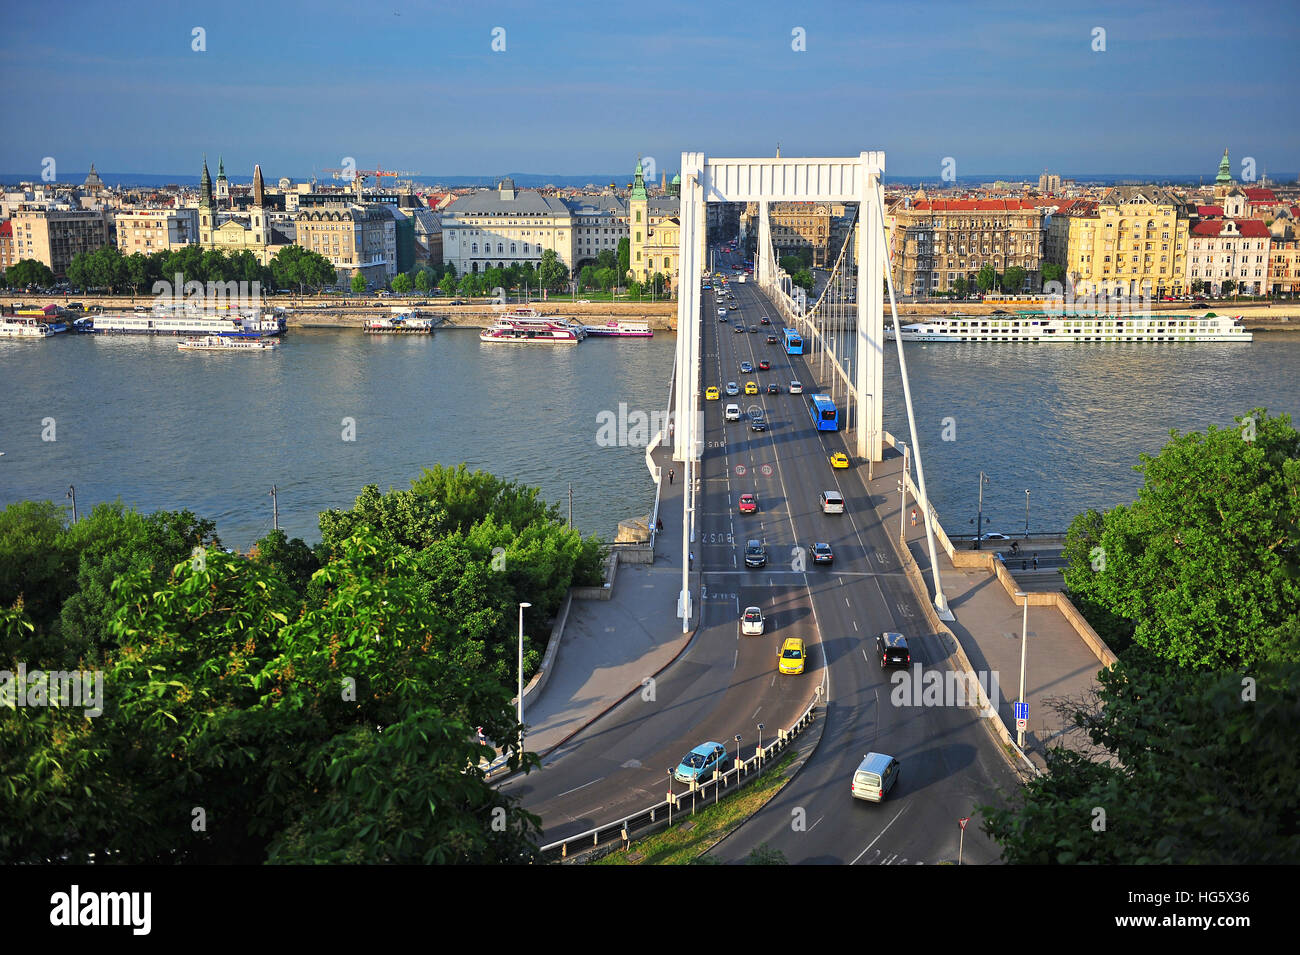 BUDAPEST, Ungarn - 23 Mai: Ansicht der Elisabethbrücke in Budapest City am 23. Mai 2016. Budapest ist die Hauptstadt und größte Stadt von Ungarn. Stockfoto